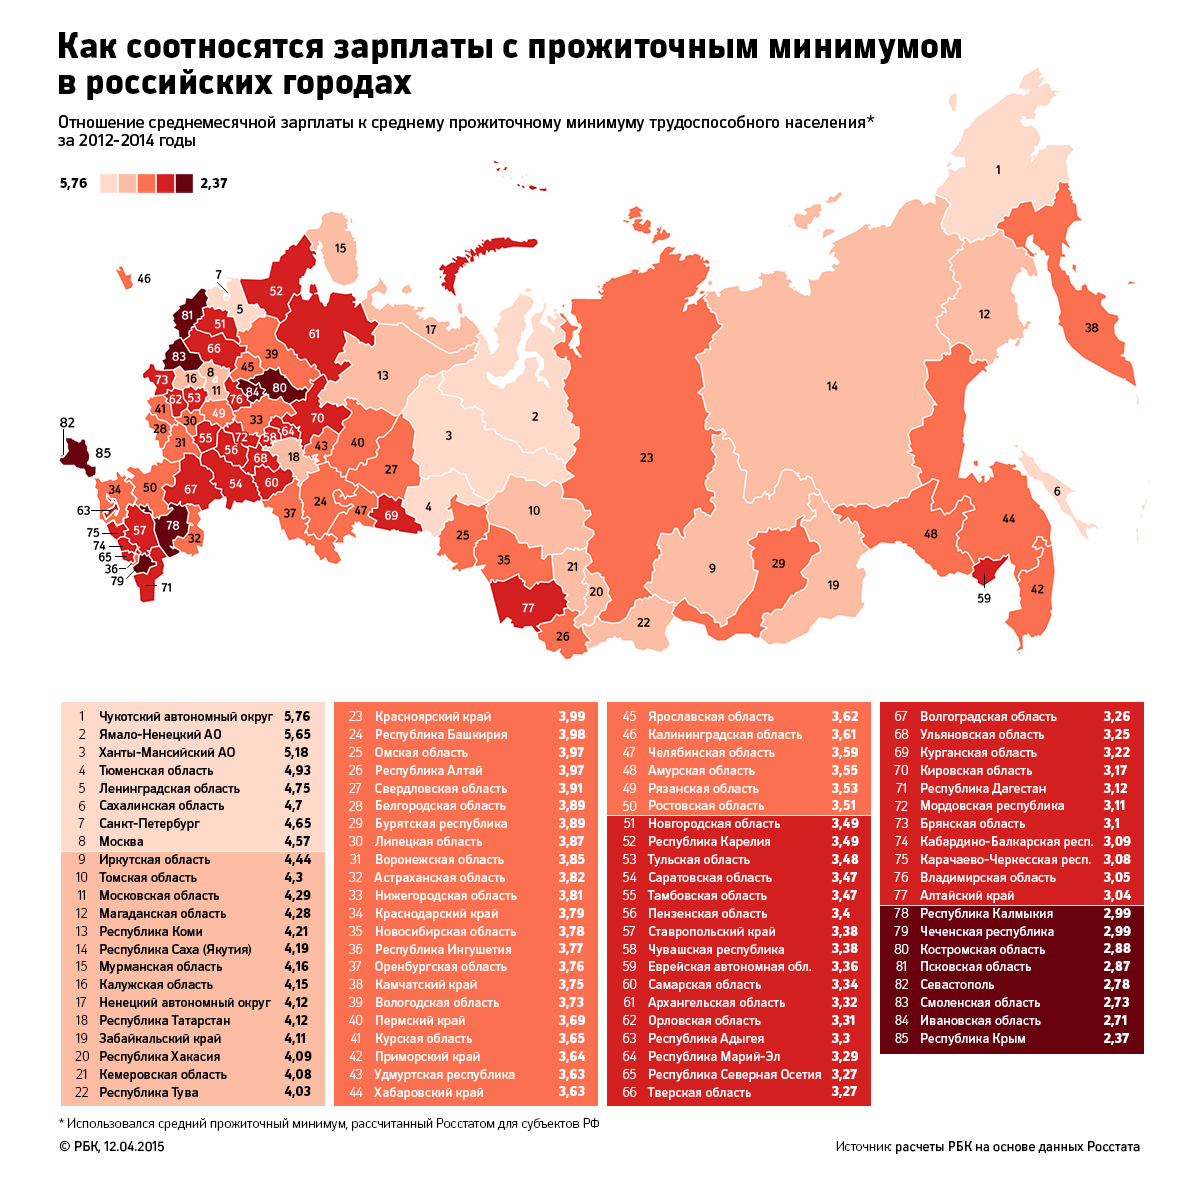 Найскладніше доводиться городянам Криму, де в 2013 році зарплати вистачало тільки на 2,4 прожиткового мінімуму, і це пов'язано перш за все з низьким рівнем життя в Україні